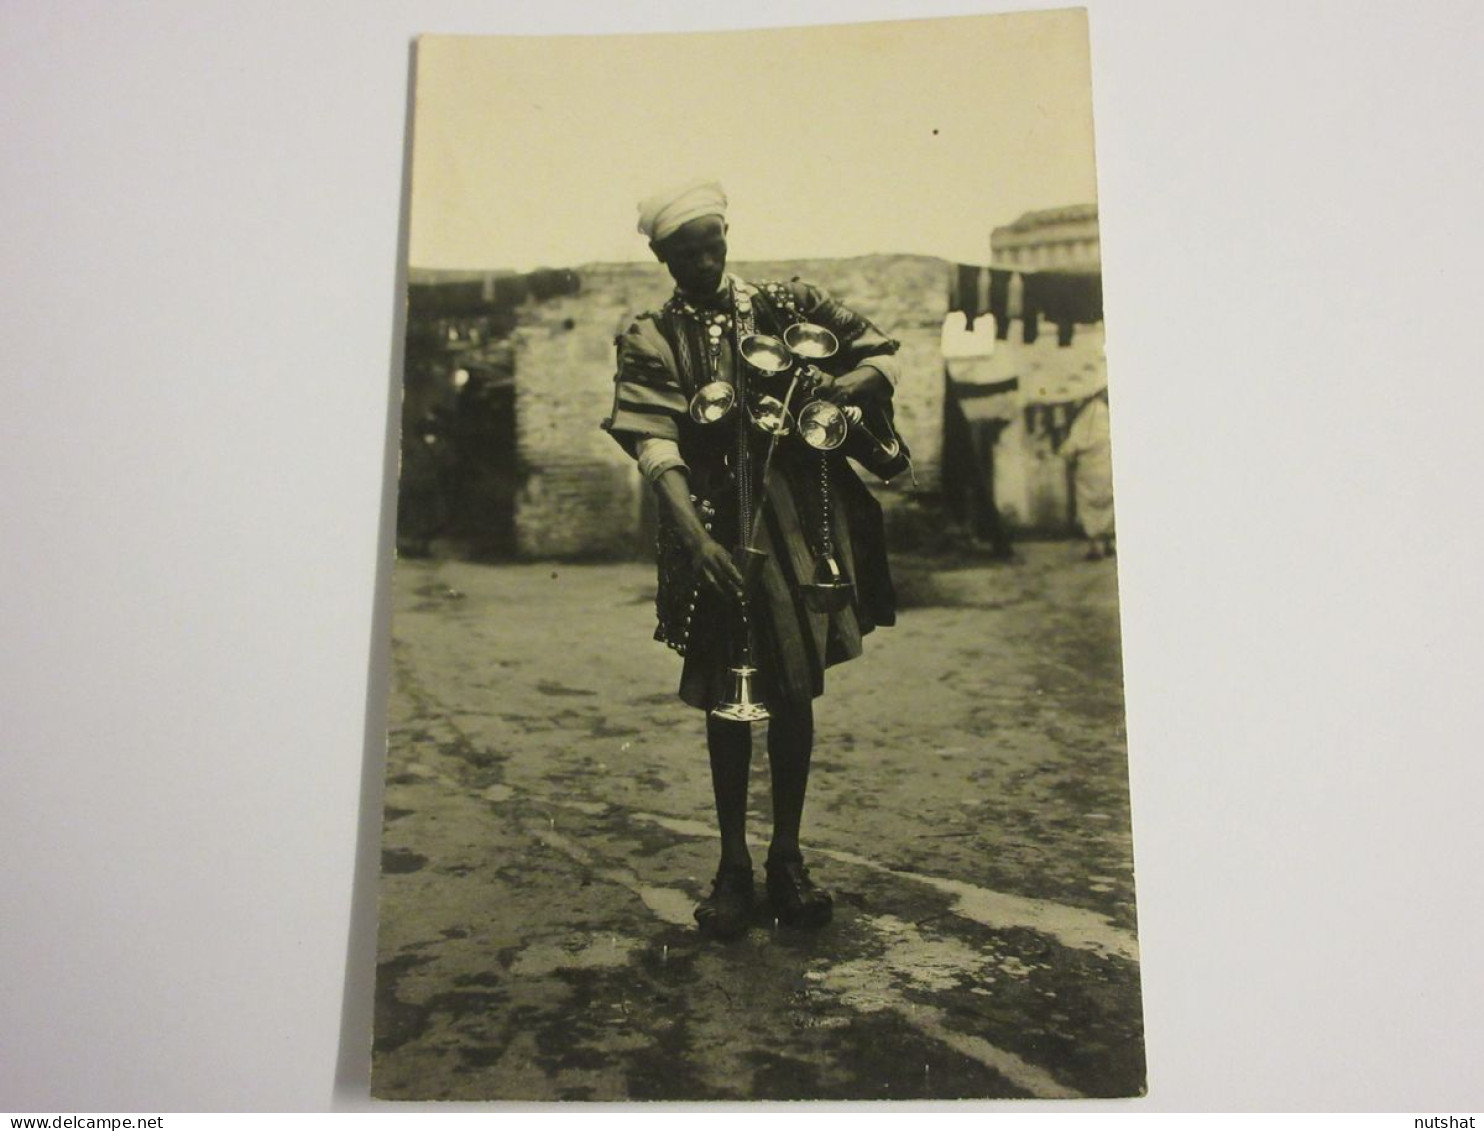 CP CARTE POSTALE PHOTO MUSICIEN AFRICAIN Pas De Signature - Verso Vierge - Photographs